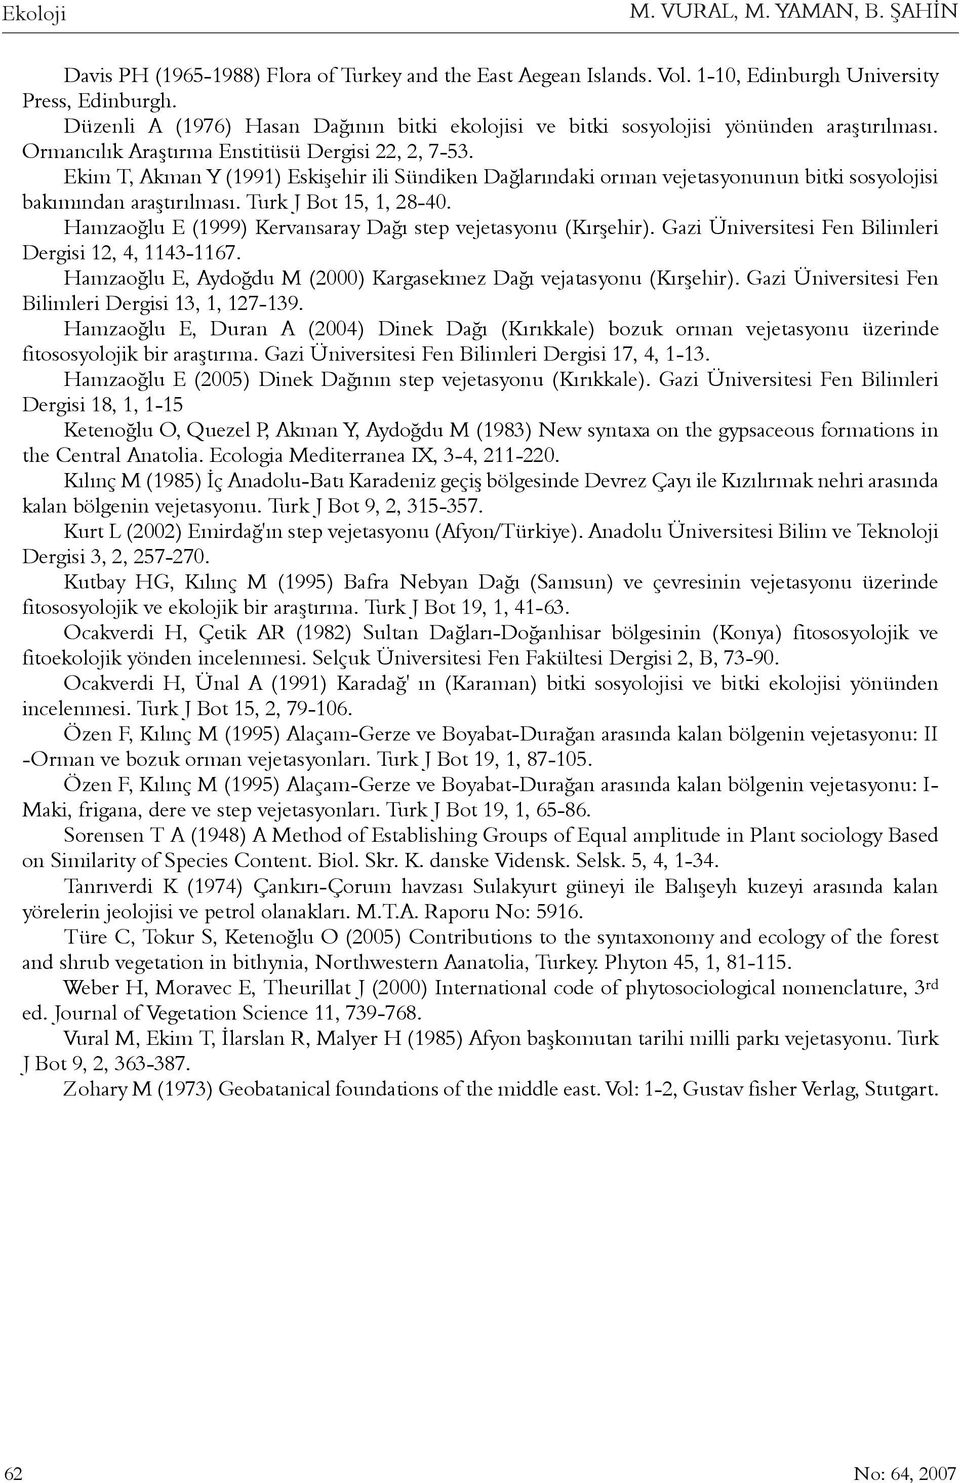 Ekim T, Akman Y (1991) Eskiþehir ili Sündiken Daðlarýndaki orman vejetasyonunun bitki sosyolojisi bakýmýndan araþtýrýlmasý. Turk J Bot 15, 1, 28-40.